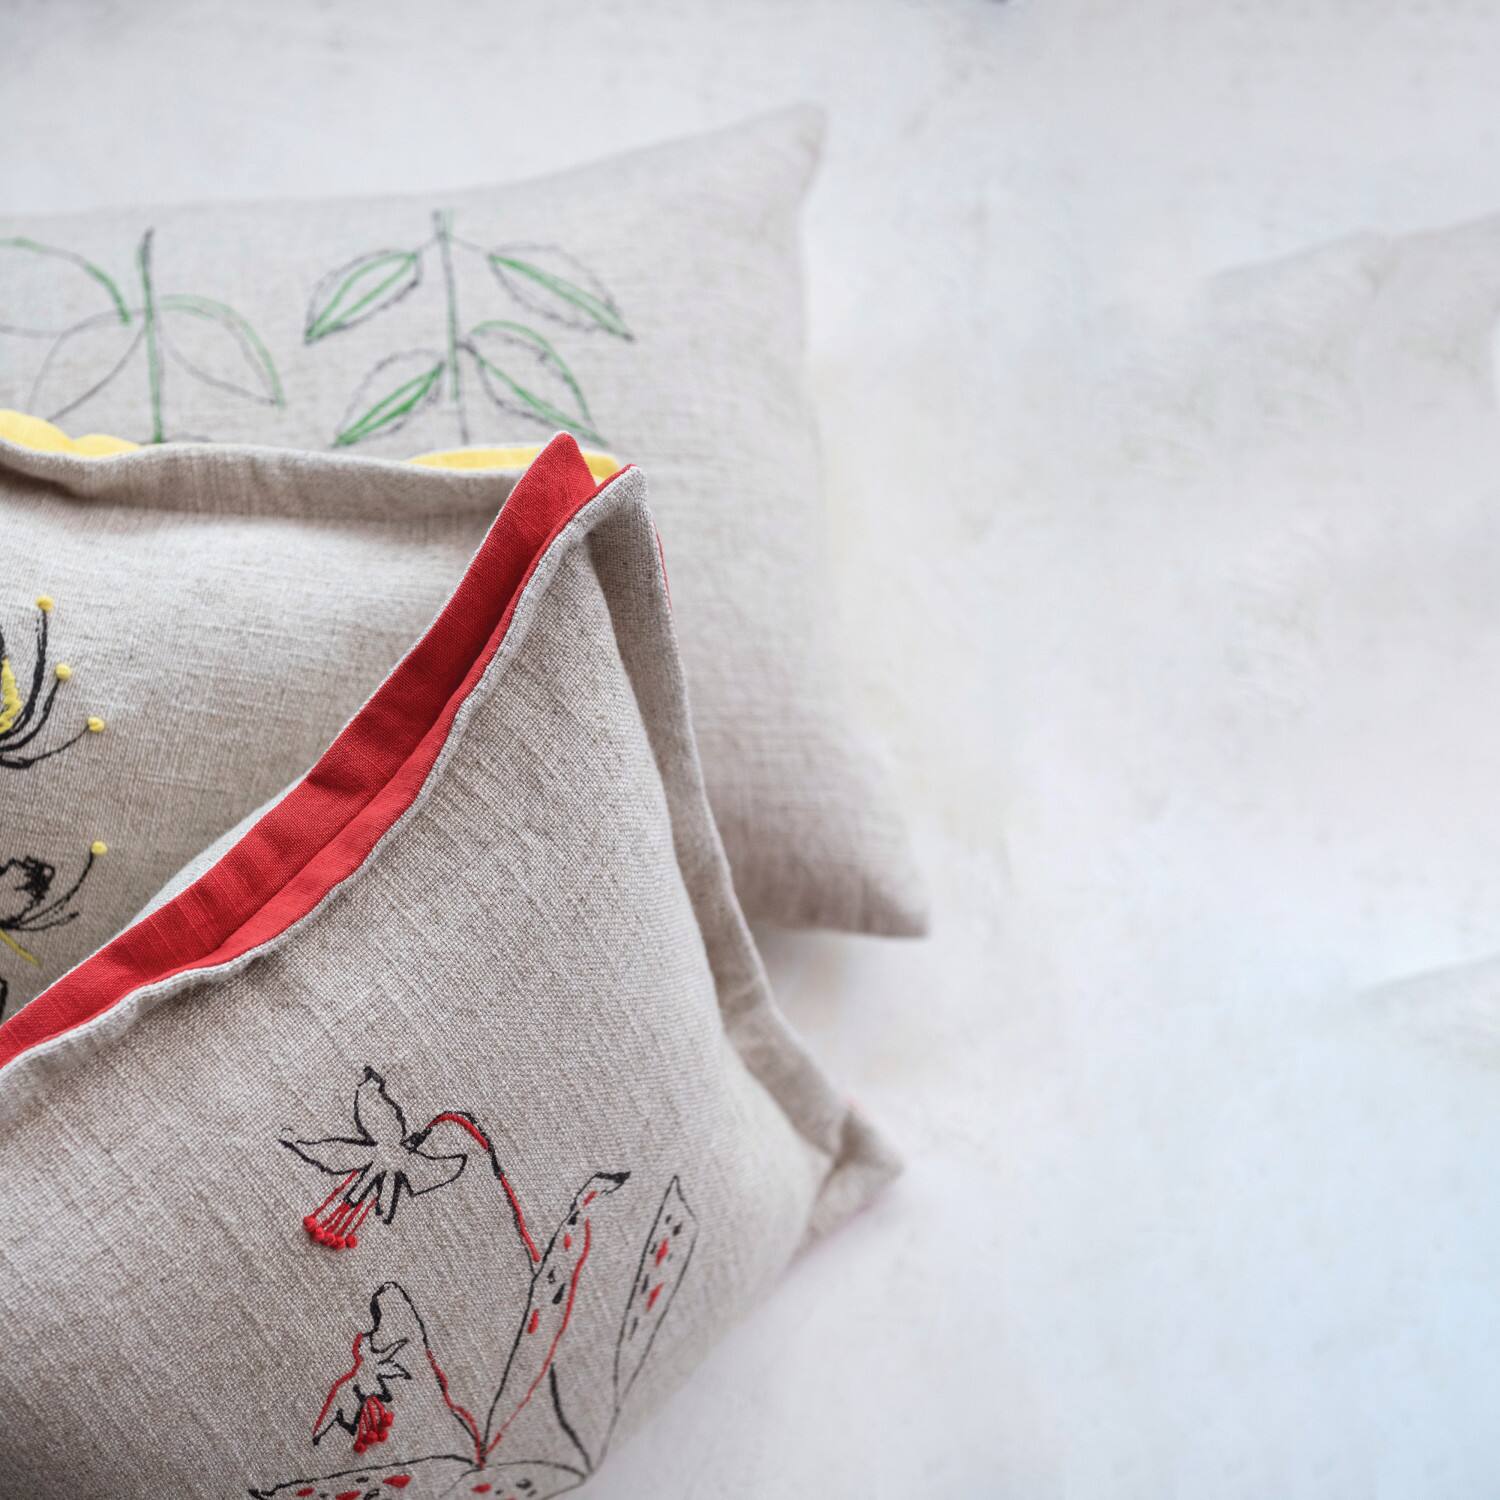 Hand-Embroidered Botanicals Linen Blend Lumbar Pillow with Kantha Stitch &#x26; Flanged Edge